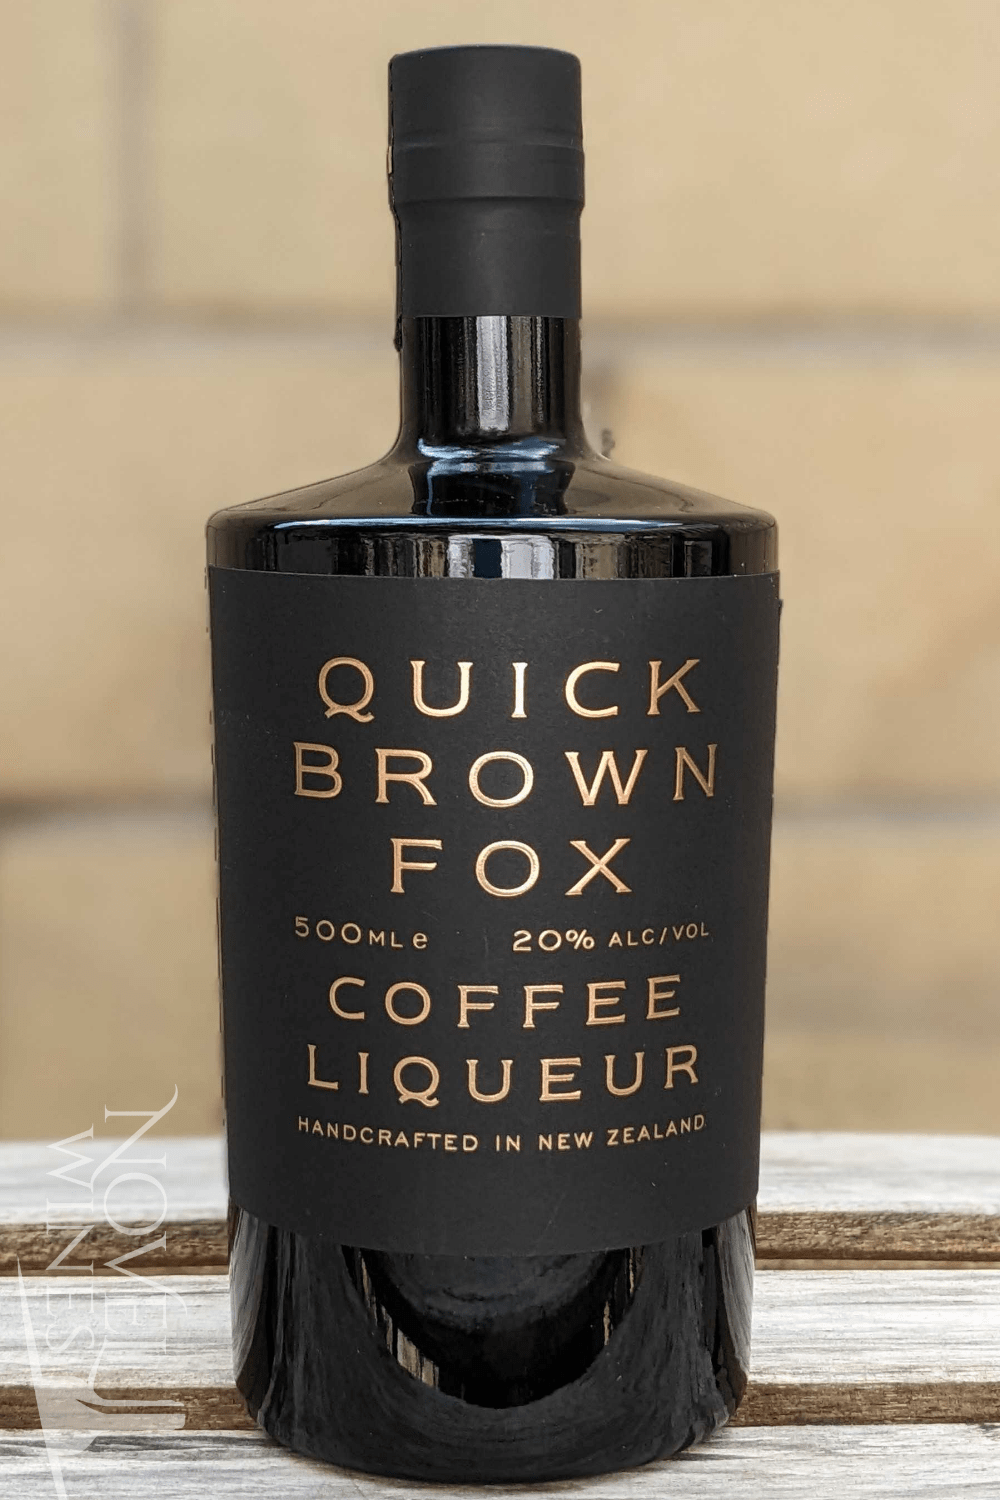 Quick Brown Fox Liqueur Quick Brown Fox Coffee Liqueur 20.0% abv, New Zealand